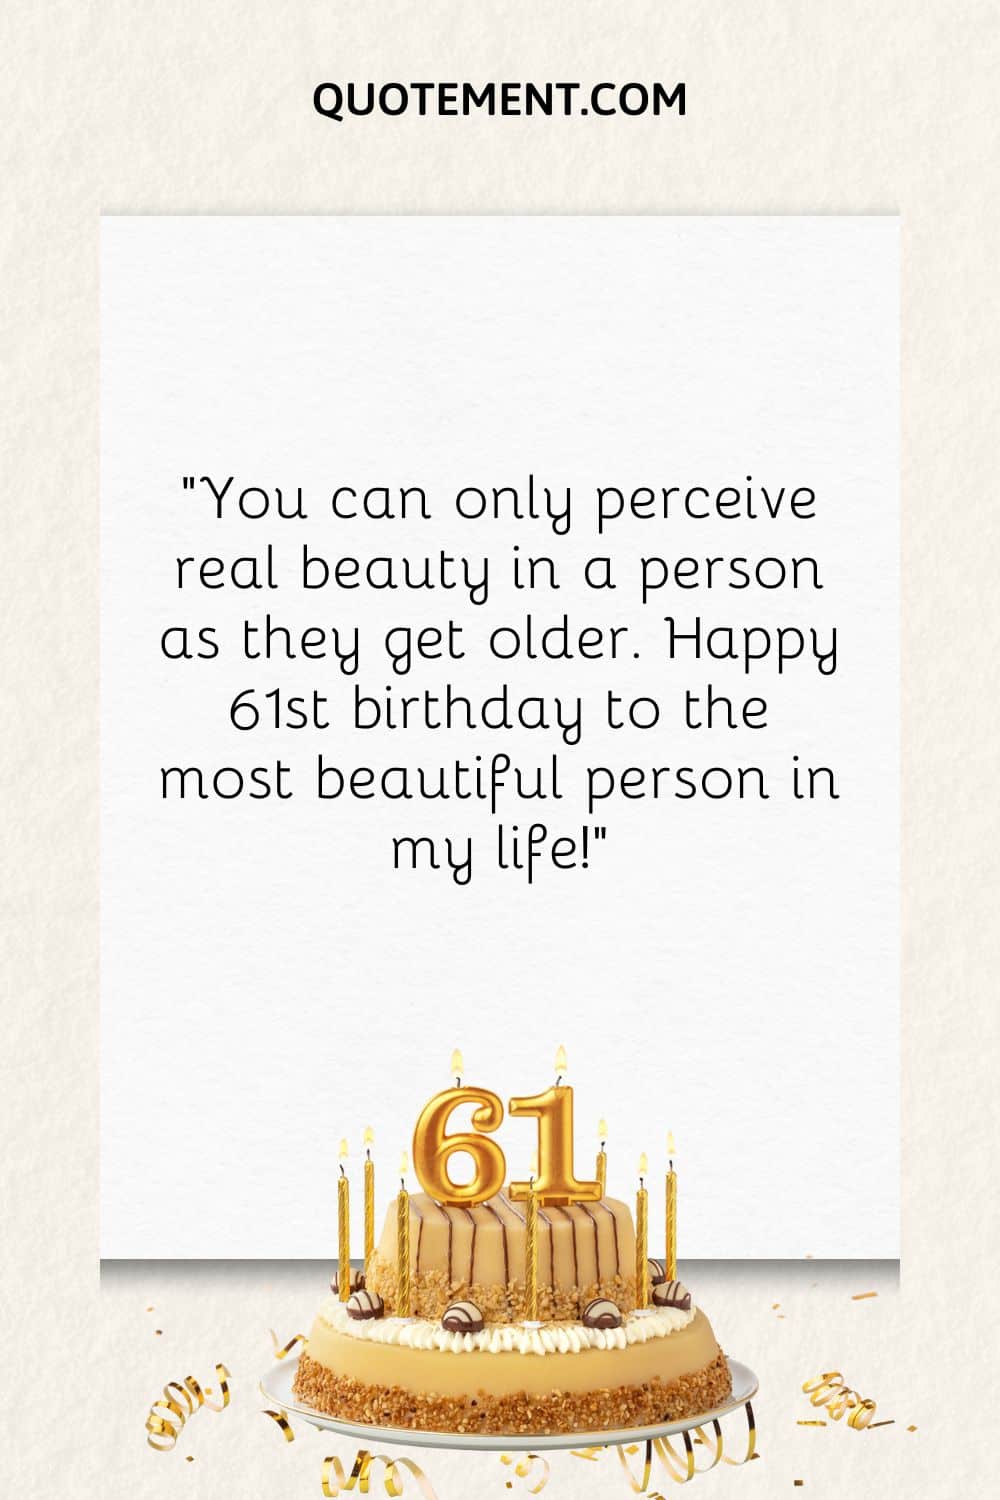 birthday cake image representing the best happy 61st birthday wish